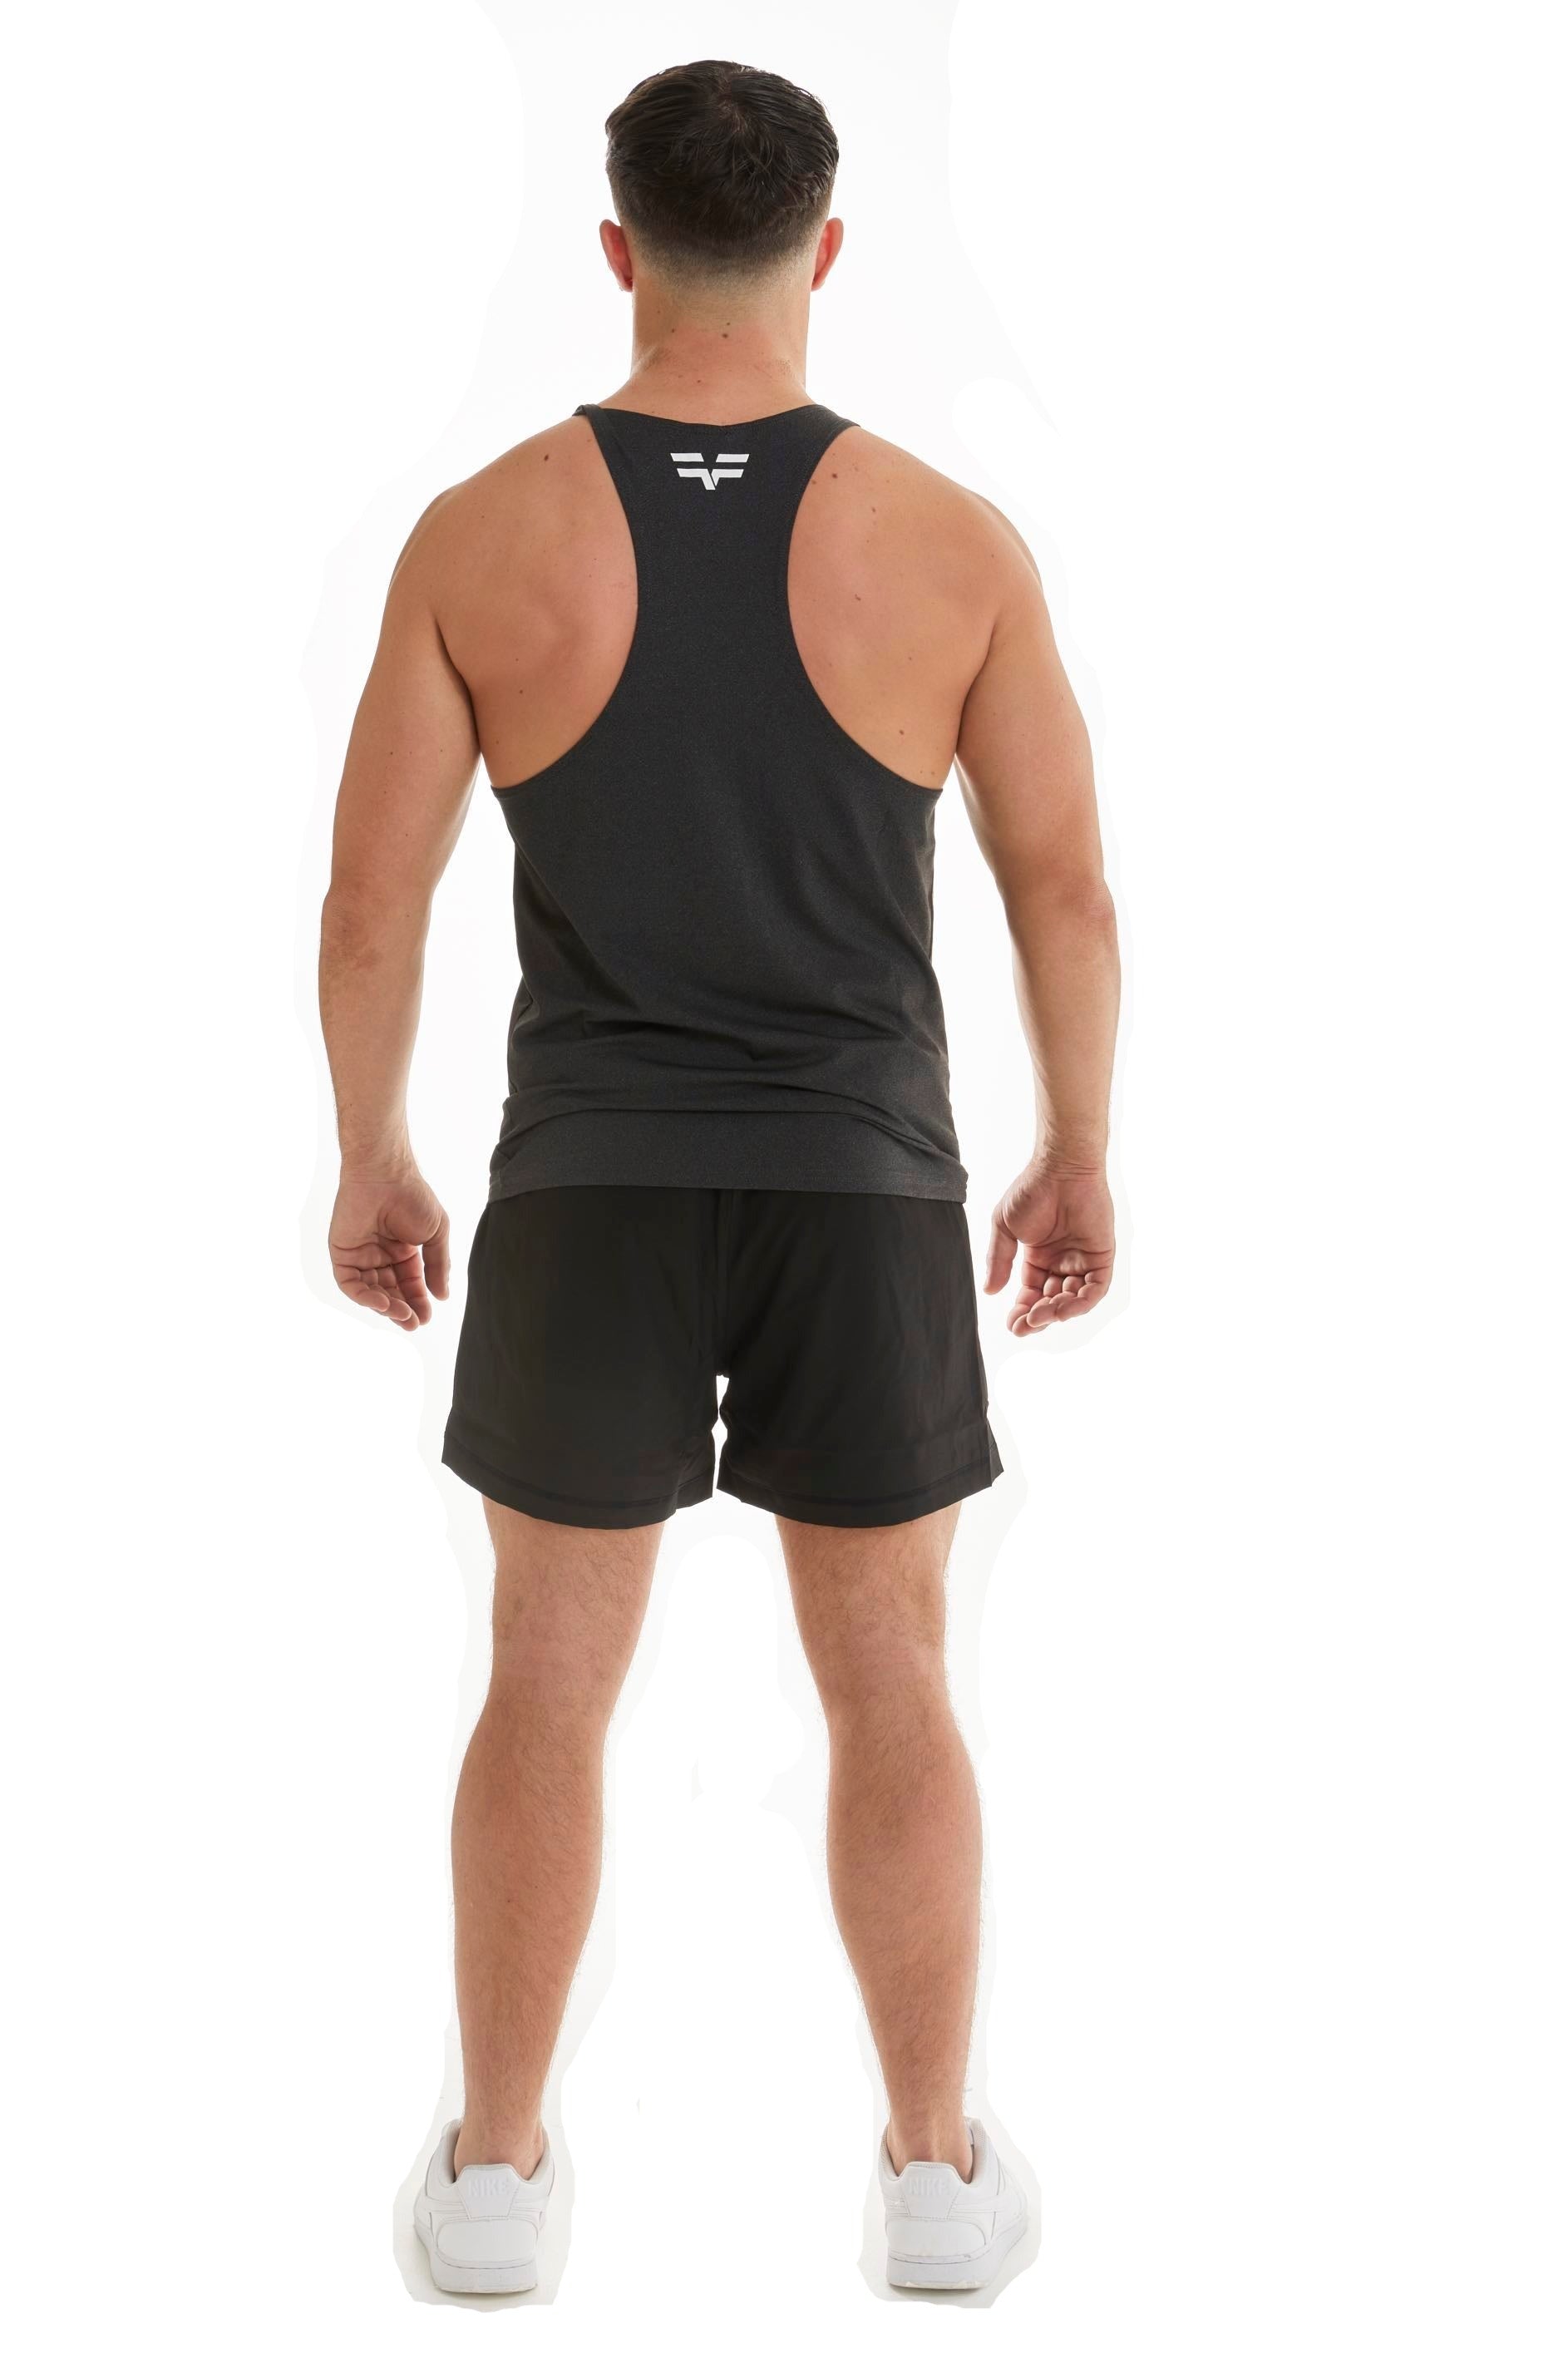 GymFreak Mens Active Vest - Charcoal